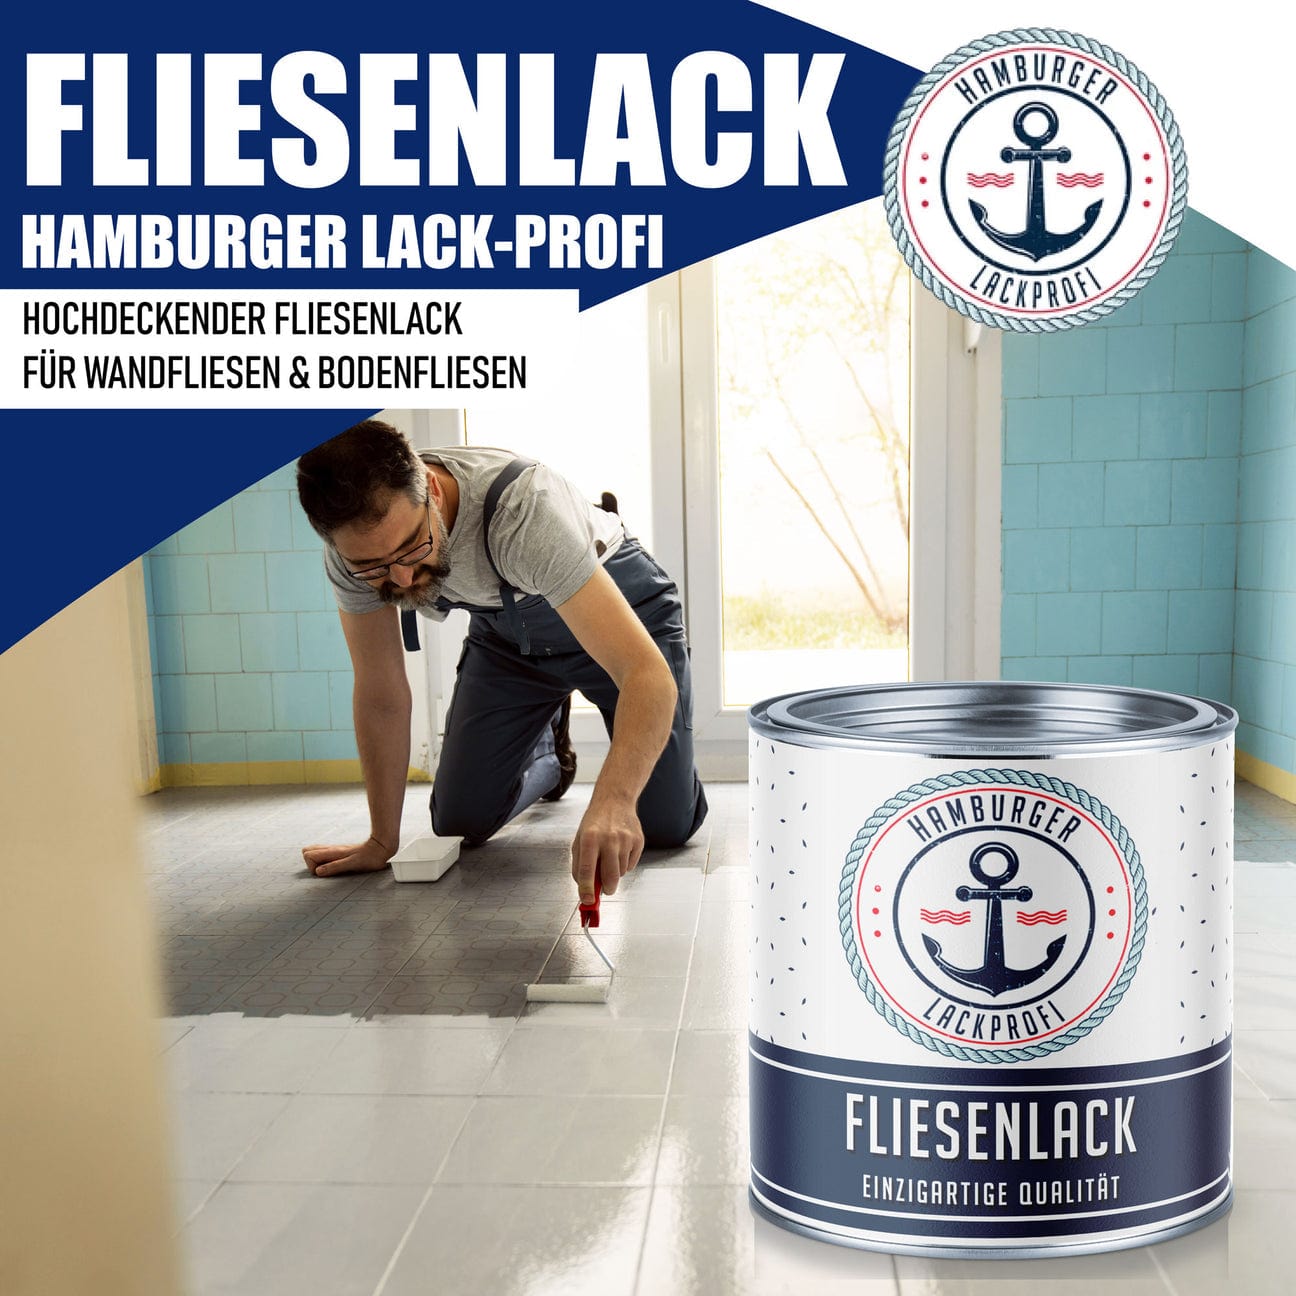 Hamburger Lack-Profi Hamburger Lack-Profi Fliesenlack Graphitschwarz RAL 9011 - hochdeckende Fliesenfarbe Schwarz